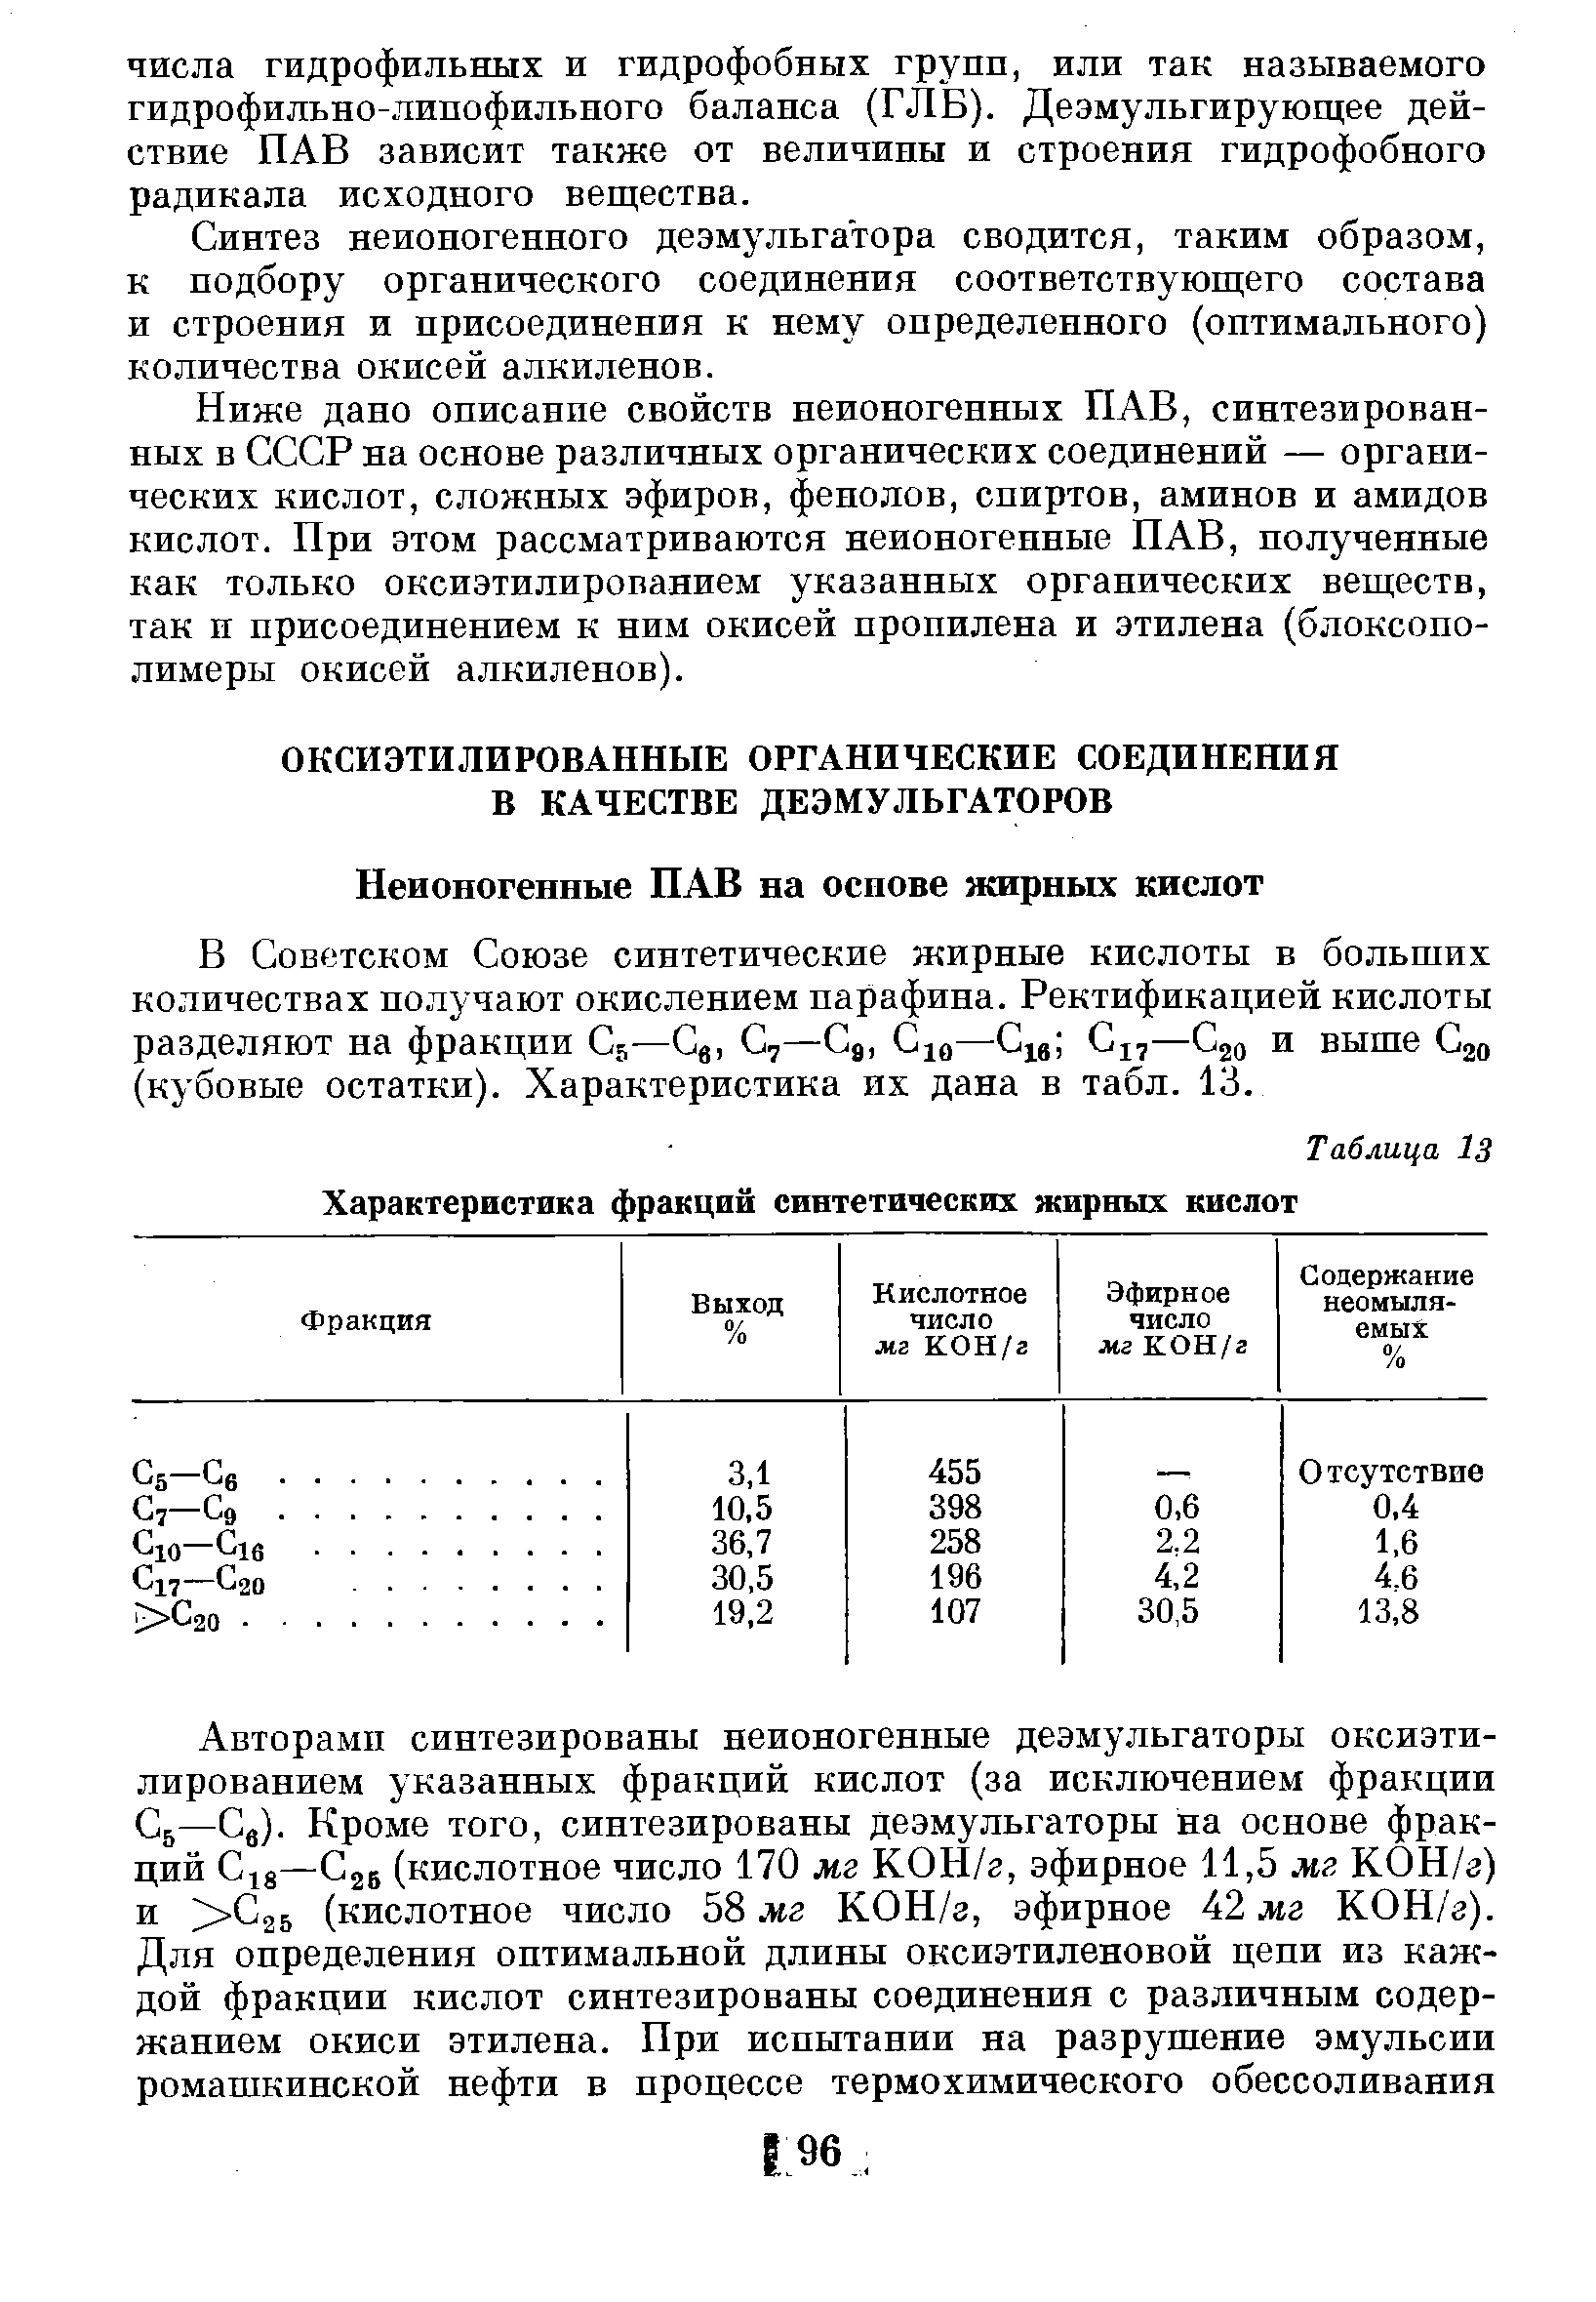 В Советском Союзе синтетические жирные кислоты в больших количествах получают окислением парафина. Ректификацией кислоты разделяют на фракции С —С , С,—Сд, С —С ,— jo и выше jo (кубовые остатки). Характеристика их дана в табл. 13.